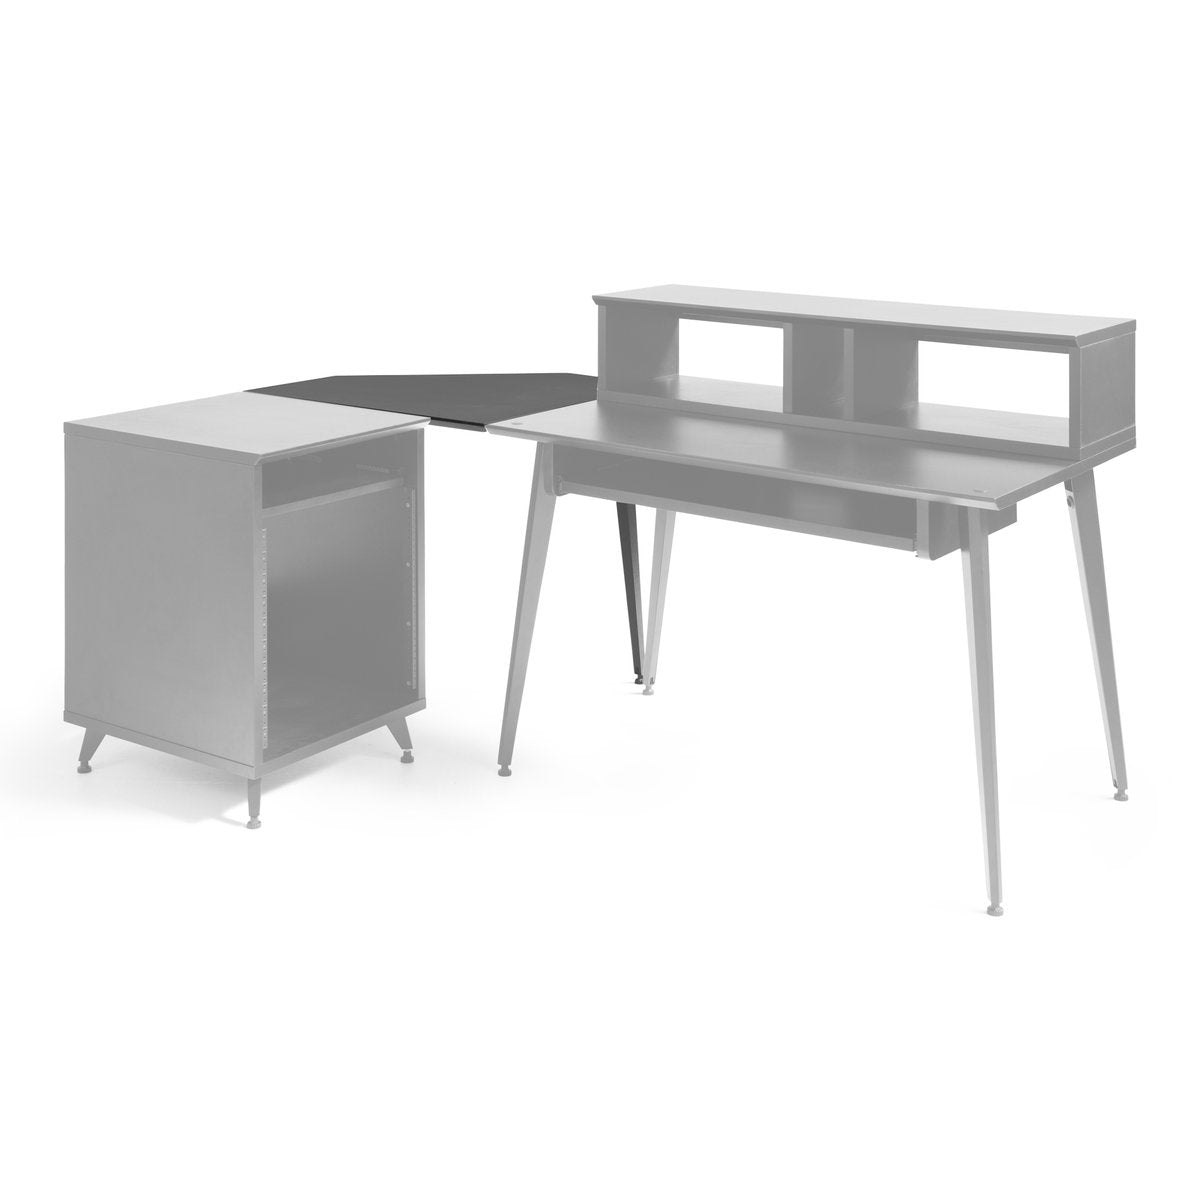 Gator Frameworks Elite Series Furniture Desk Corner Section - Black, View 2